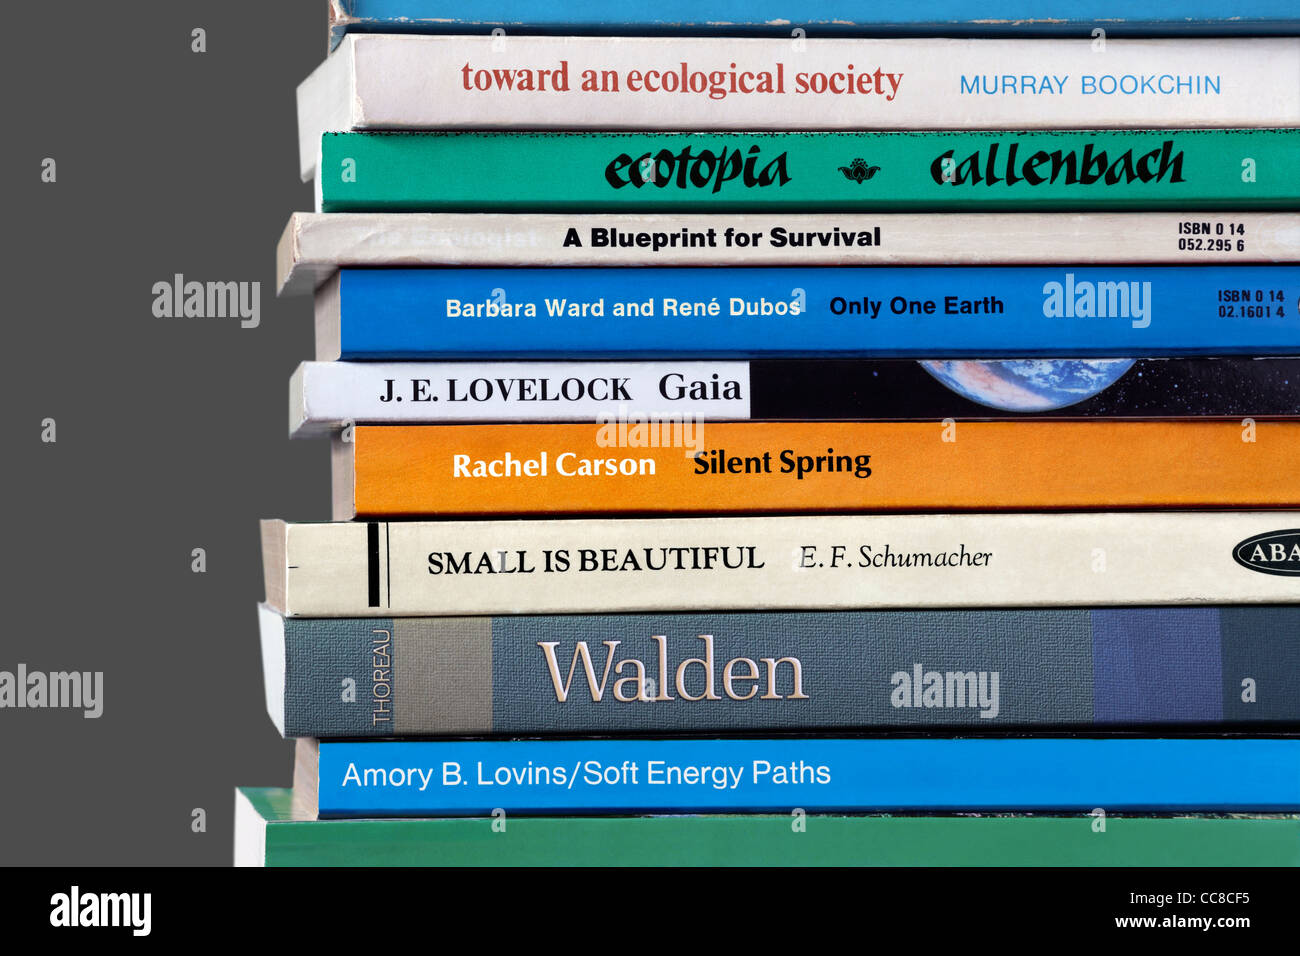 Eine Auswahl an Büchern in Umweltfragen, einschließlich der historischen Titeln, die die grüne Bewegung beeinflusst haben. Stockfoto